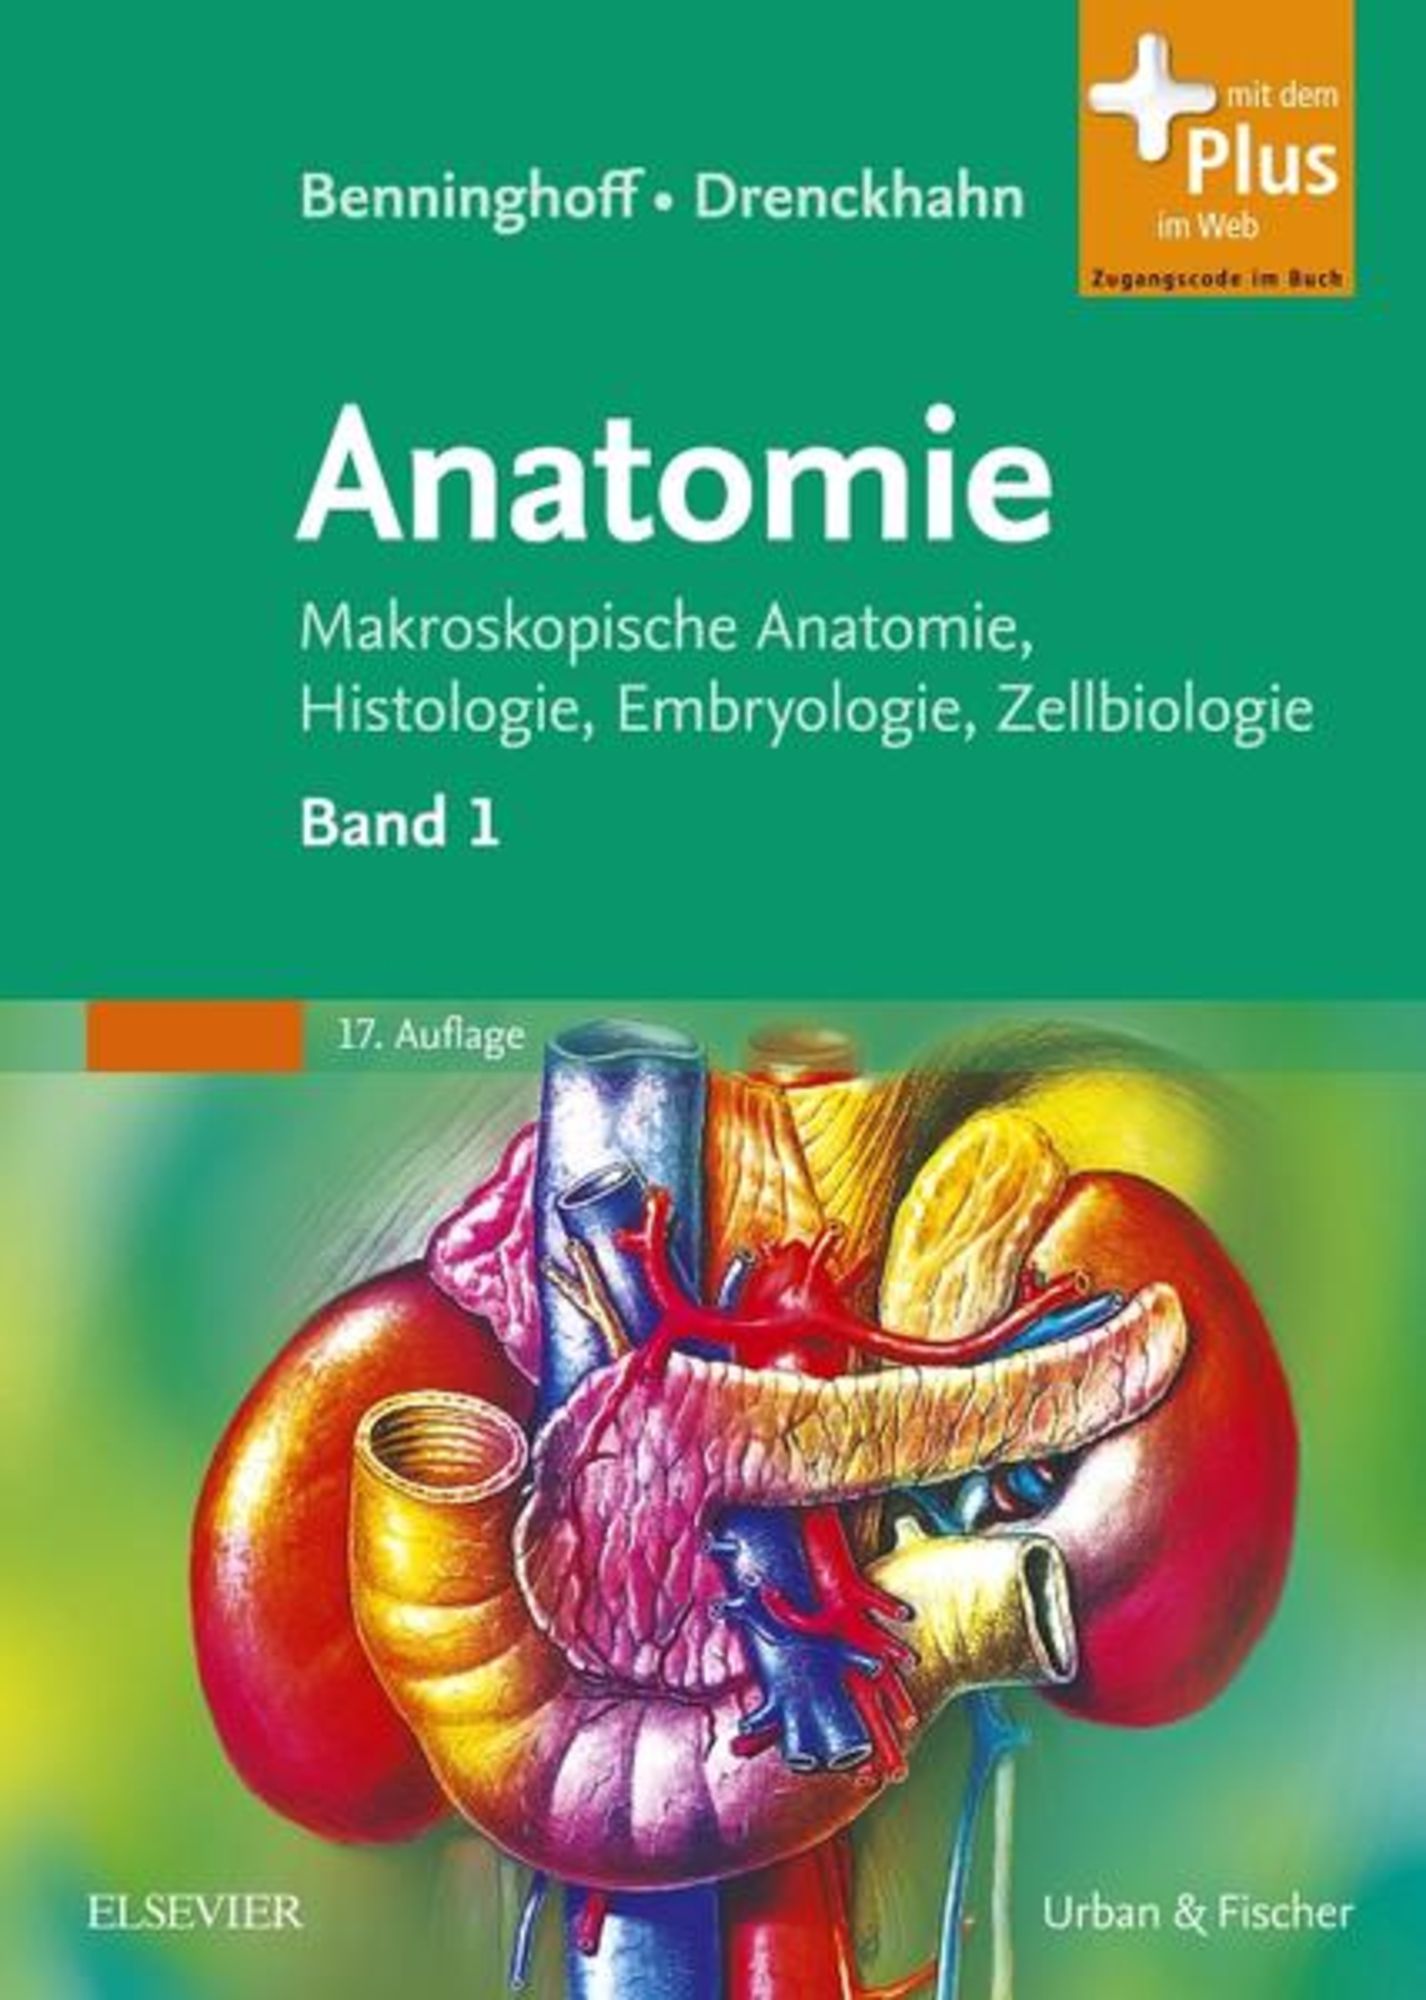 Anatomie\' von \'Alfred Benninghoff\' Buch Drenckhahn, Benninghoff, - \'978-3-437-42342-0\' -